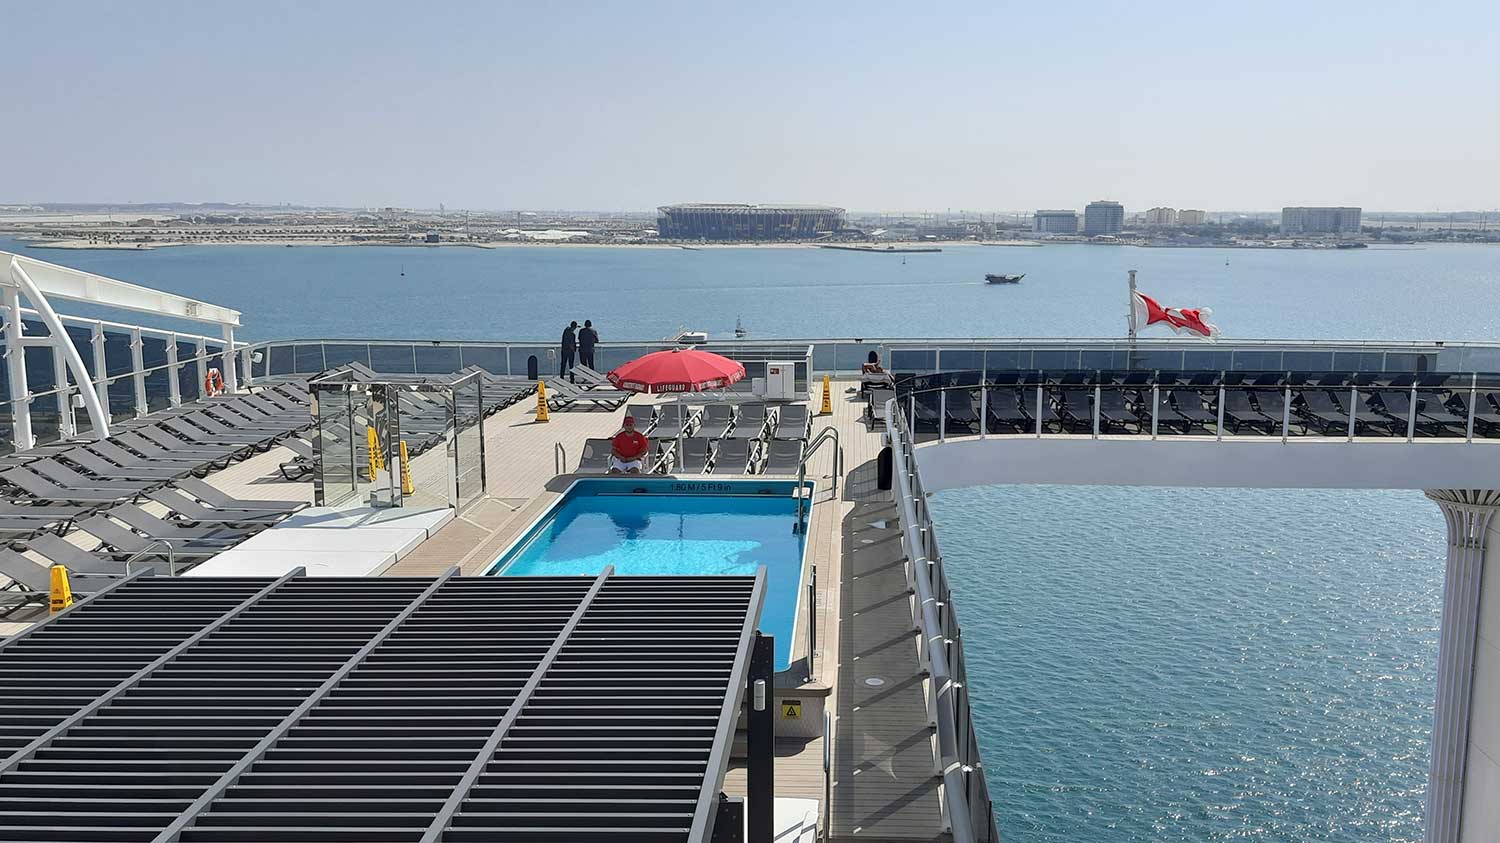 Existem 7 piscinas dentro do MSC World Europa, sendo 1 com teto retrátil e 1 para o the MSC Yacht Club. Foto: Felipe Carvalho/iG